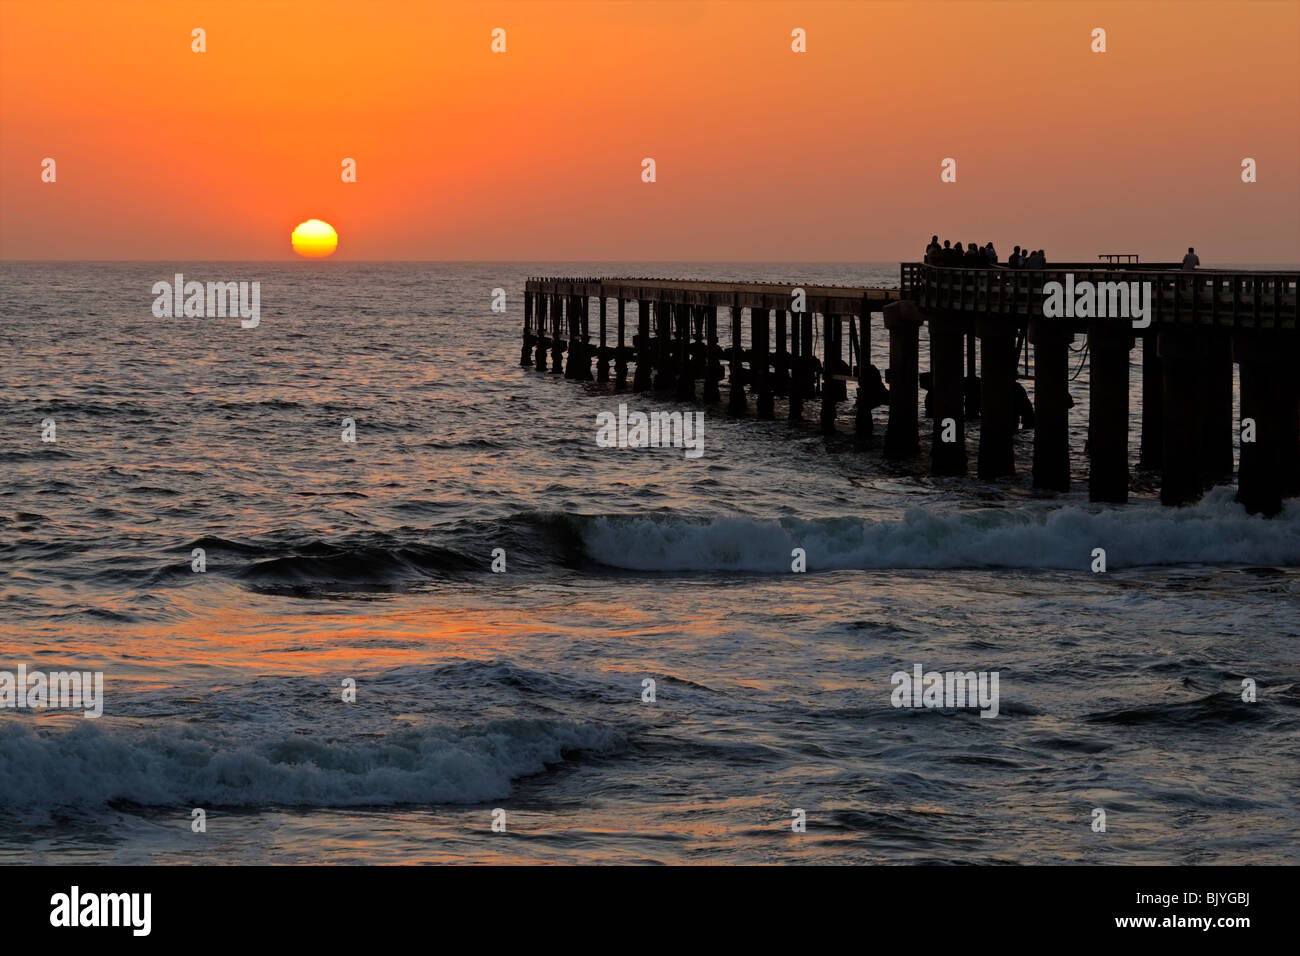 Vista di una profila molo costiere con persone a guardare un tramonto incandescente Foto Stock